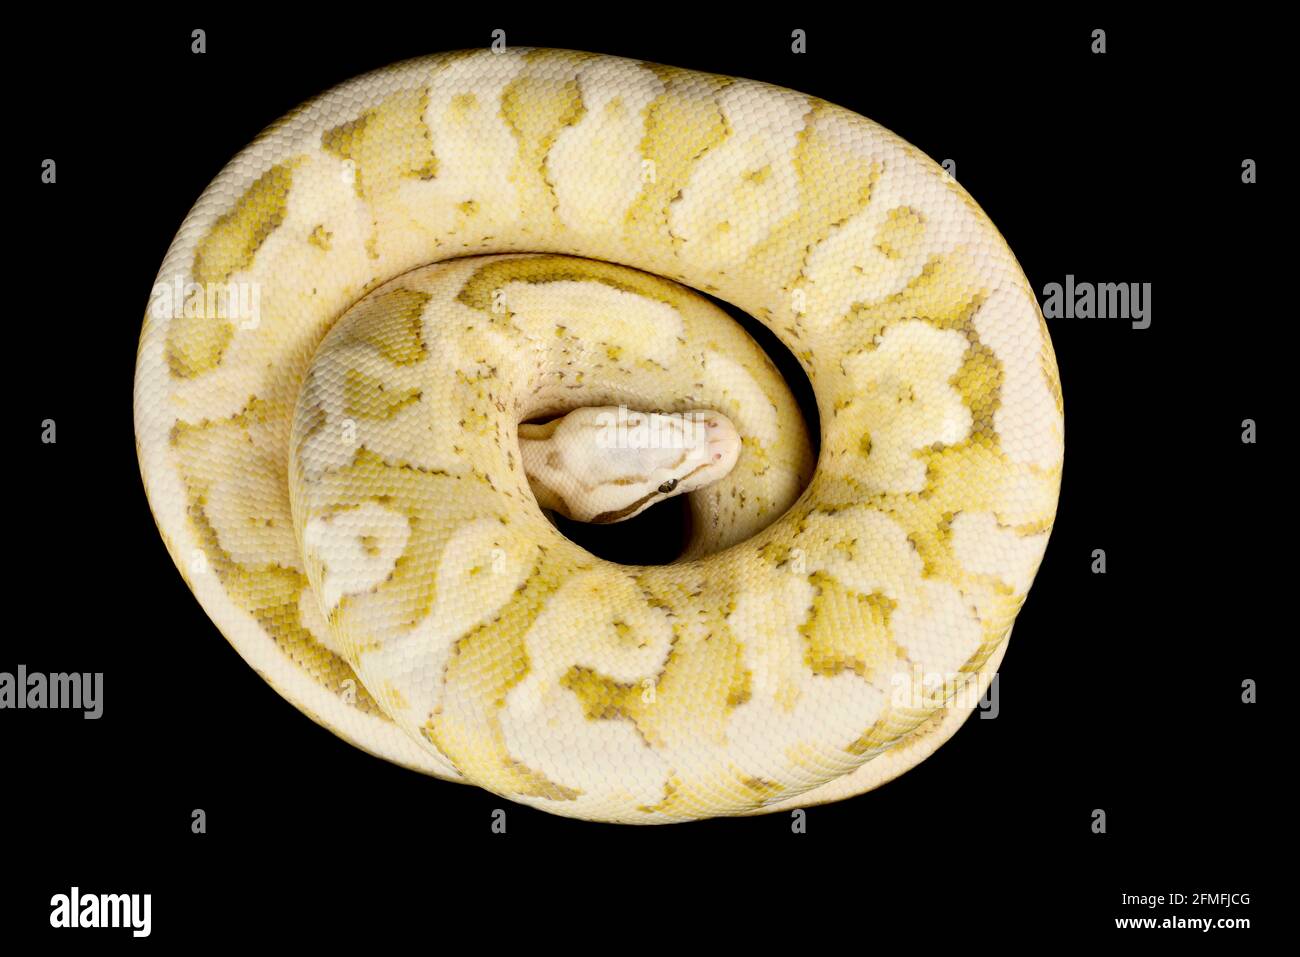 Le python de balle (Python regius) est l'une des espèces de serpents d'animaux de compagnie les plus populaires au monde. Ils sont élevés dans une grande variété de couleurs. Banque D'Images